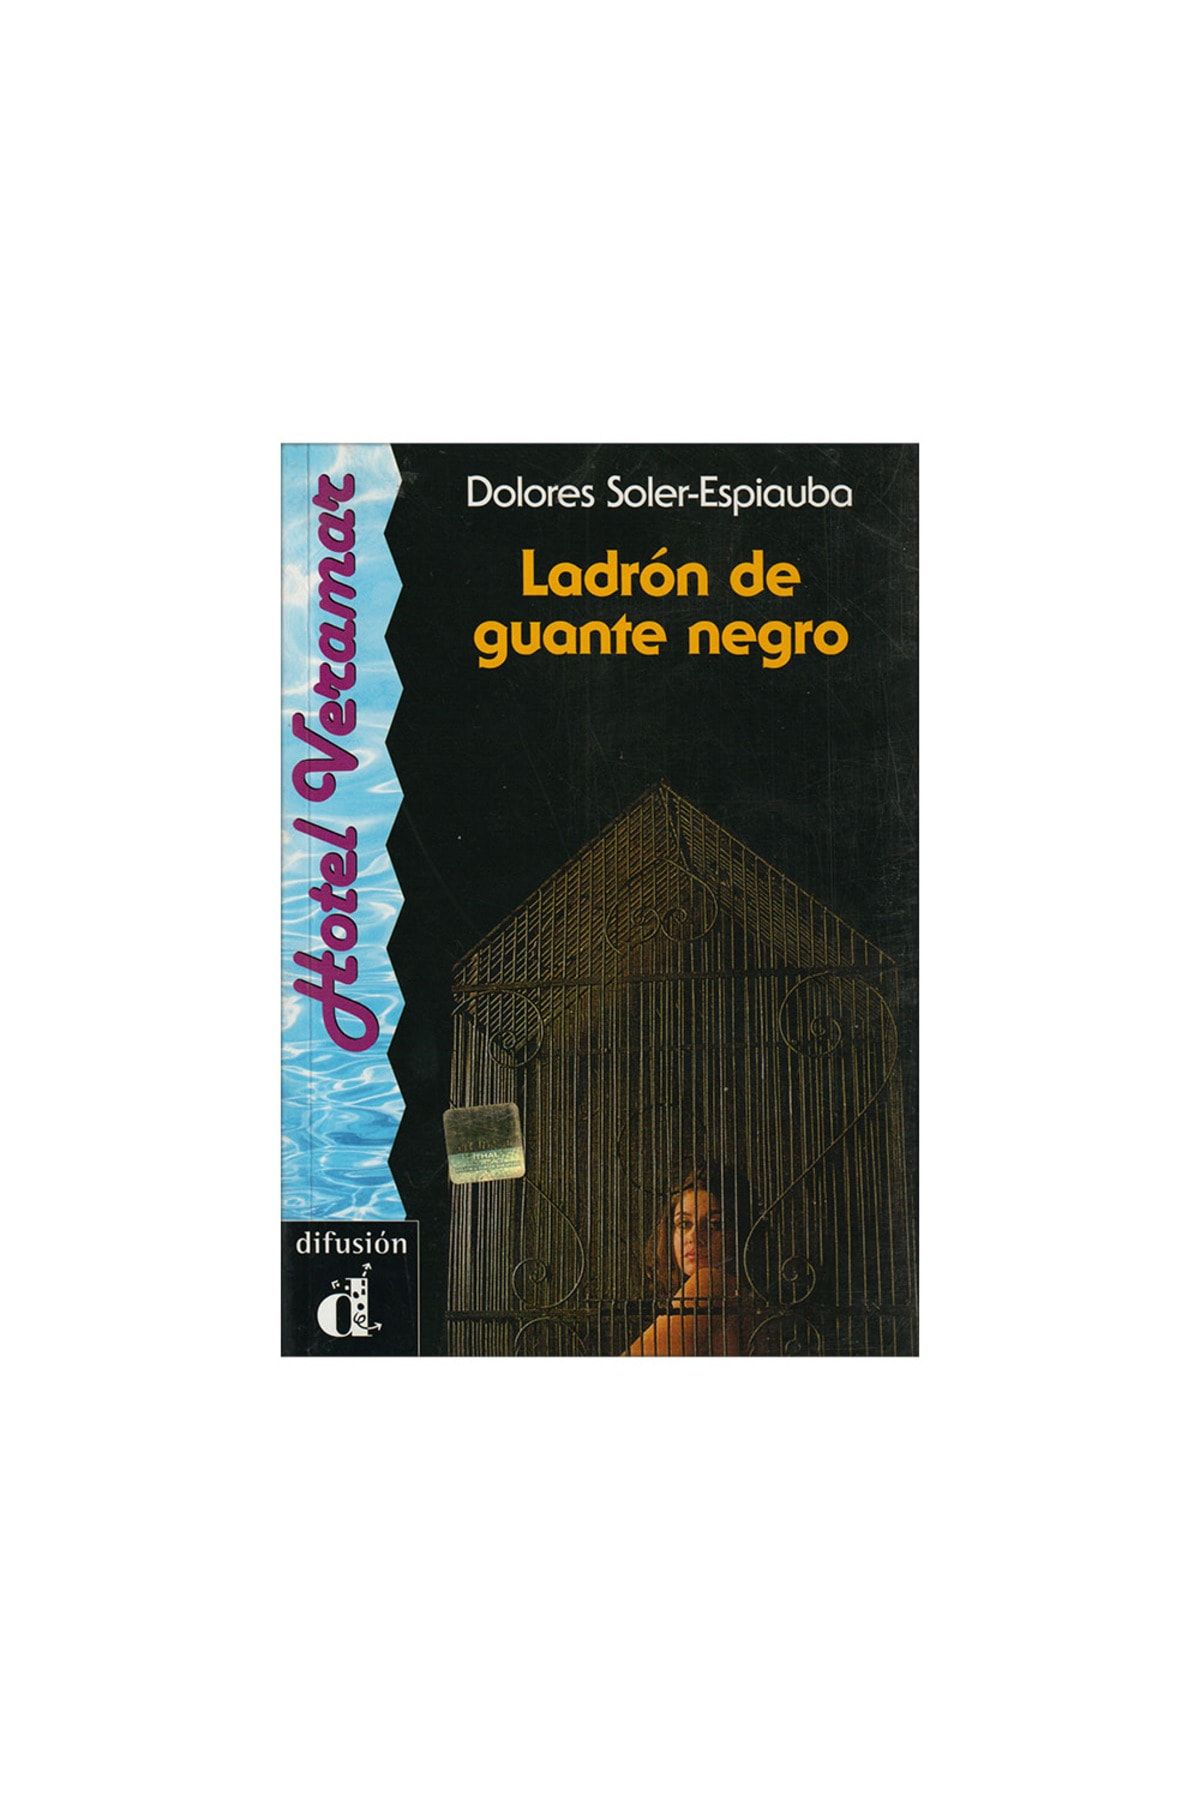 Ladrón de guante negro (Hotel Veramar) by Dolores Soler-Espiauba